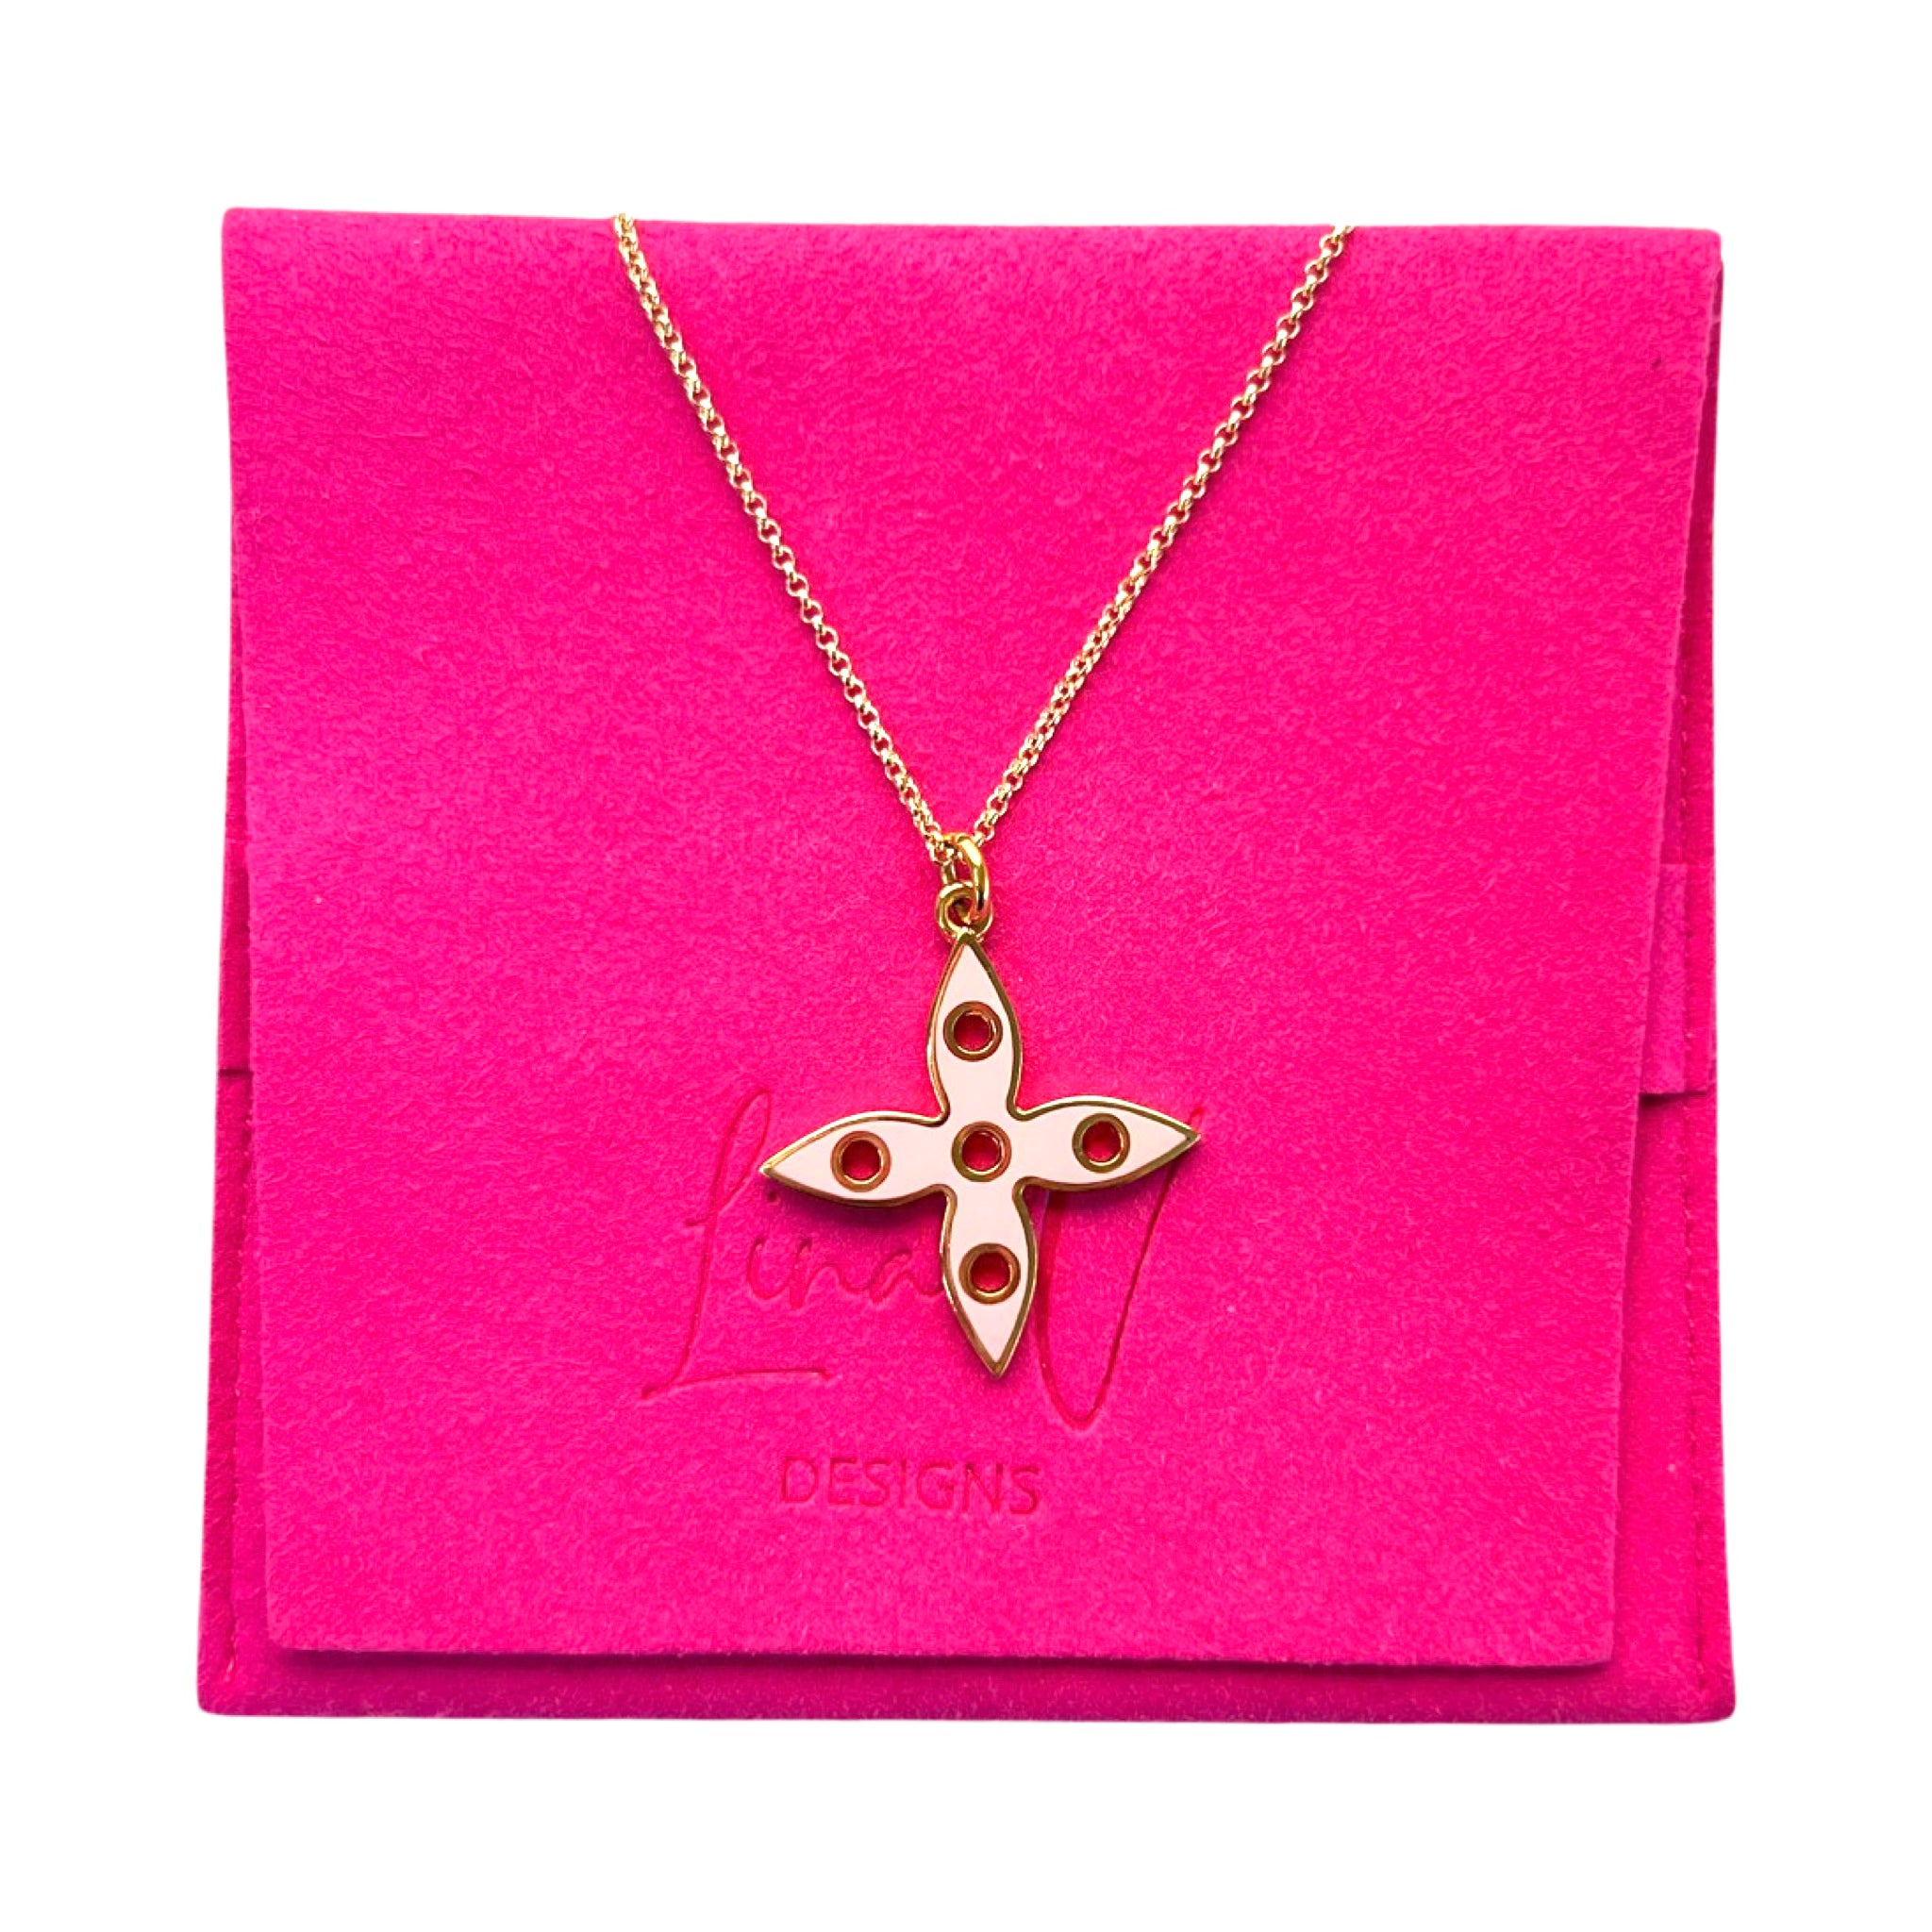 Louis Vuitton flower pendant necklace